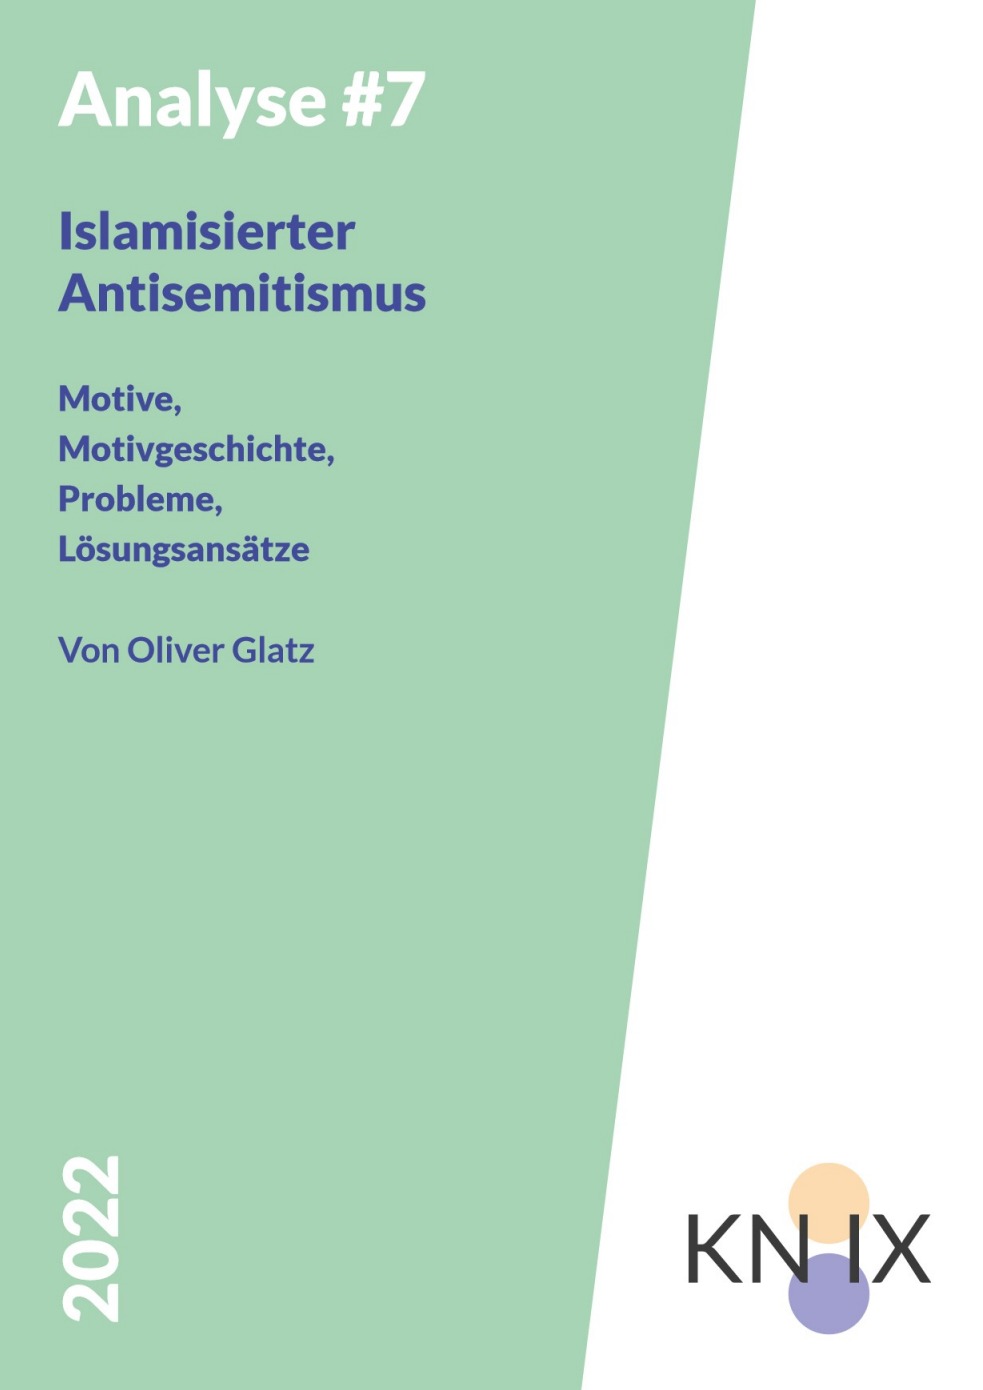 Auf einem grünen Hintergrund steht der Titel der Broschüre "Islamisierter Antisemitismus"